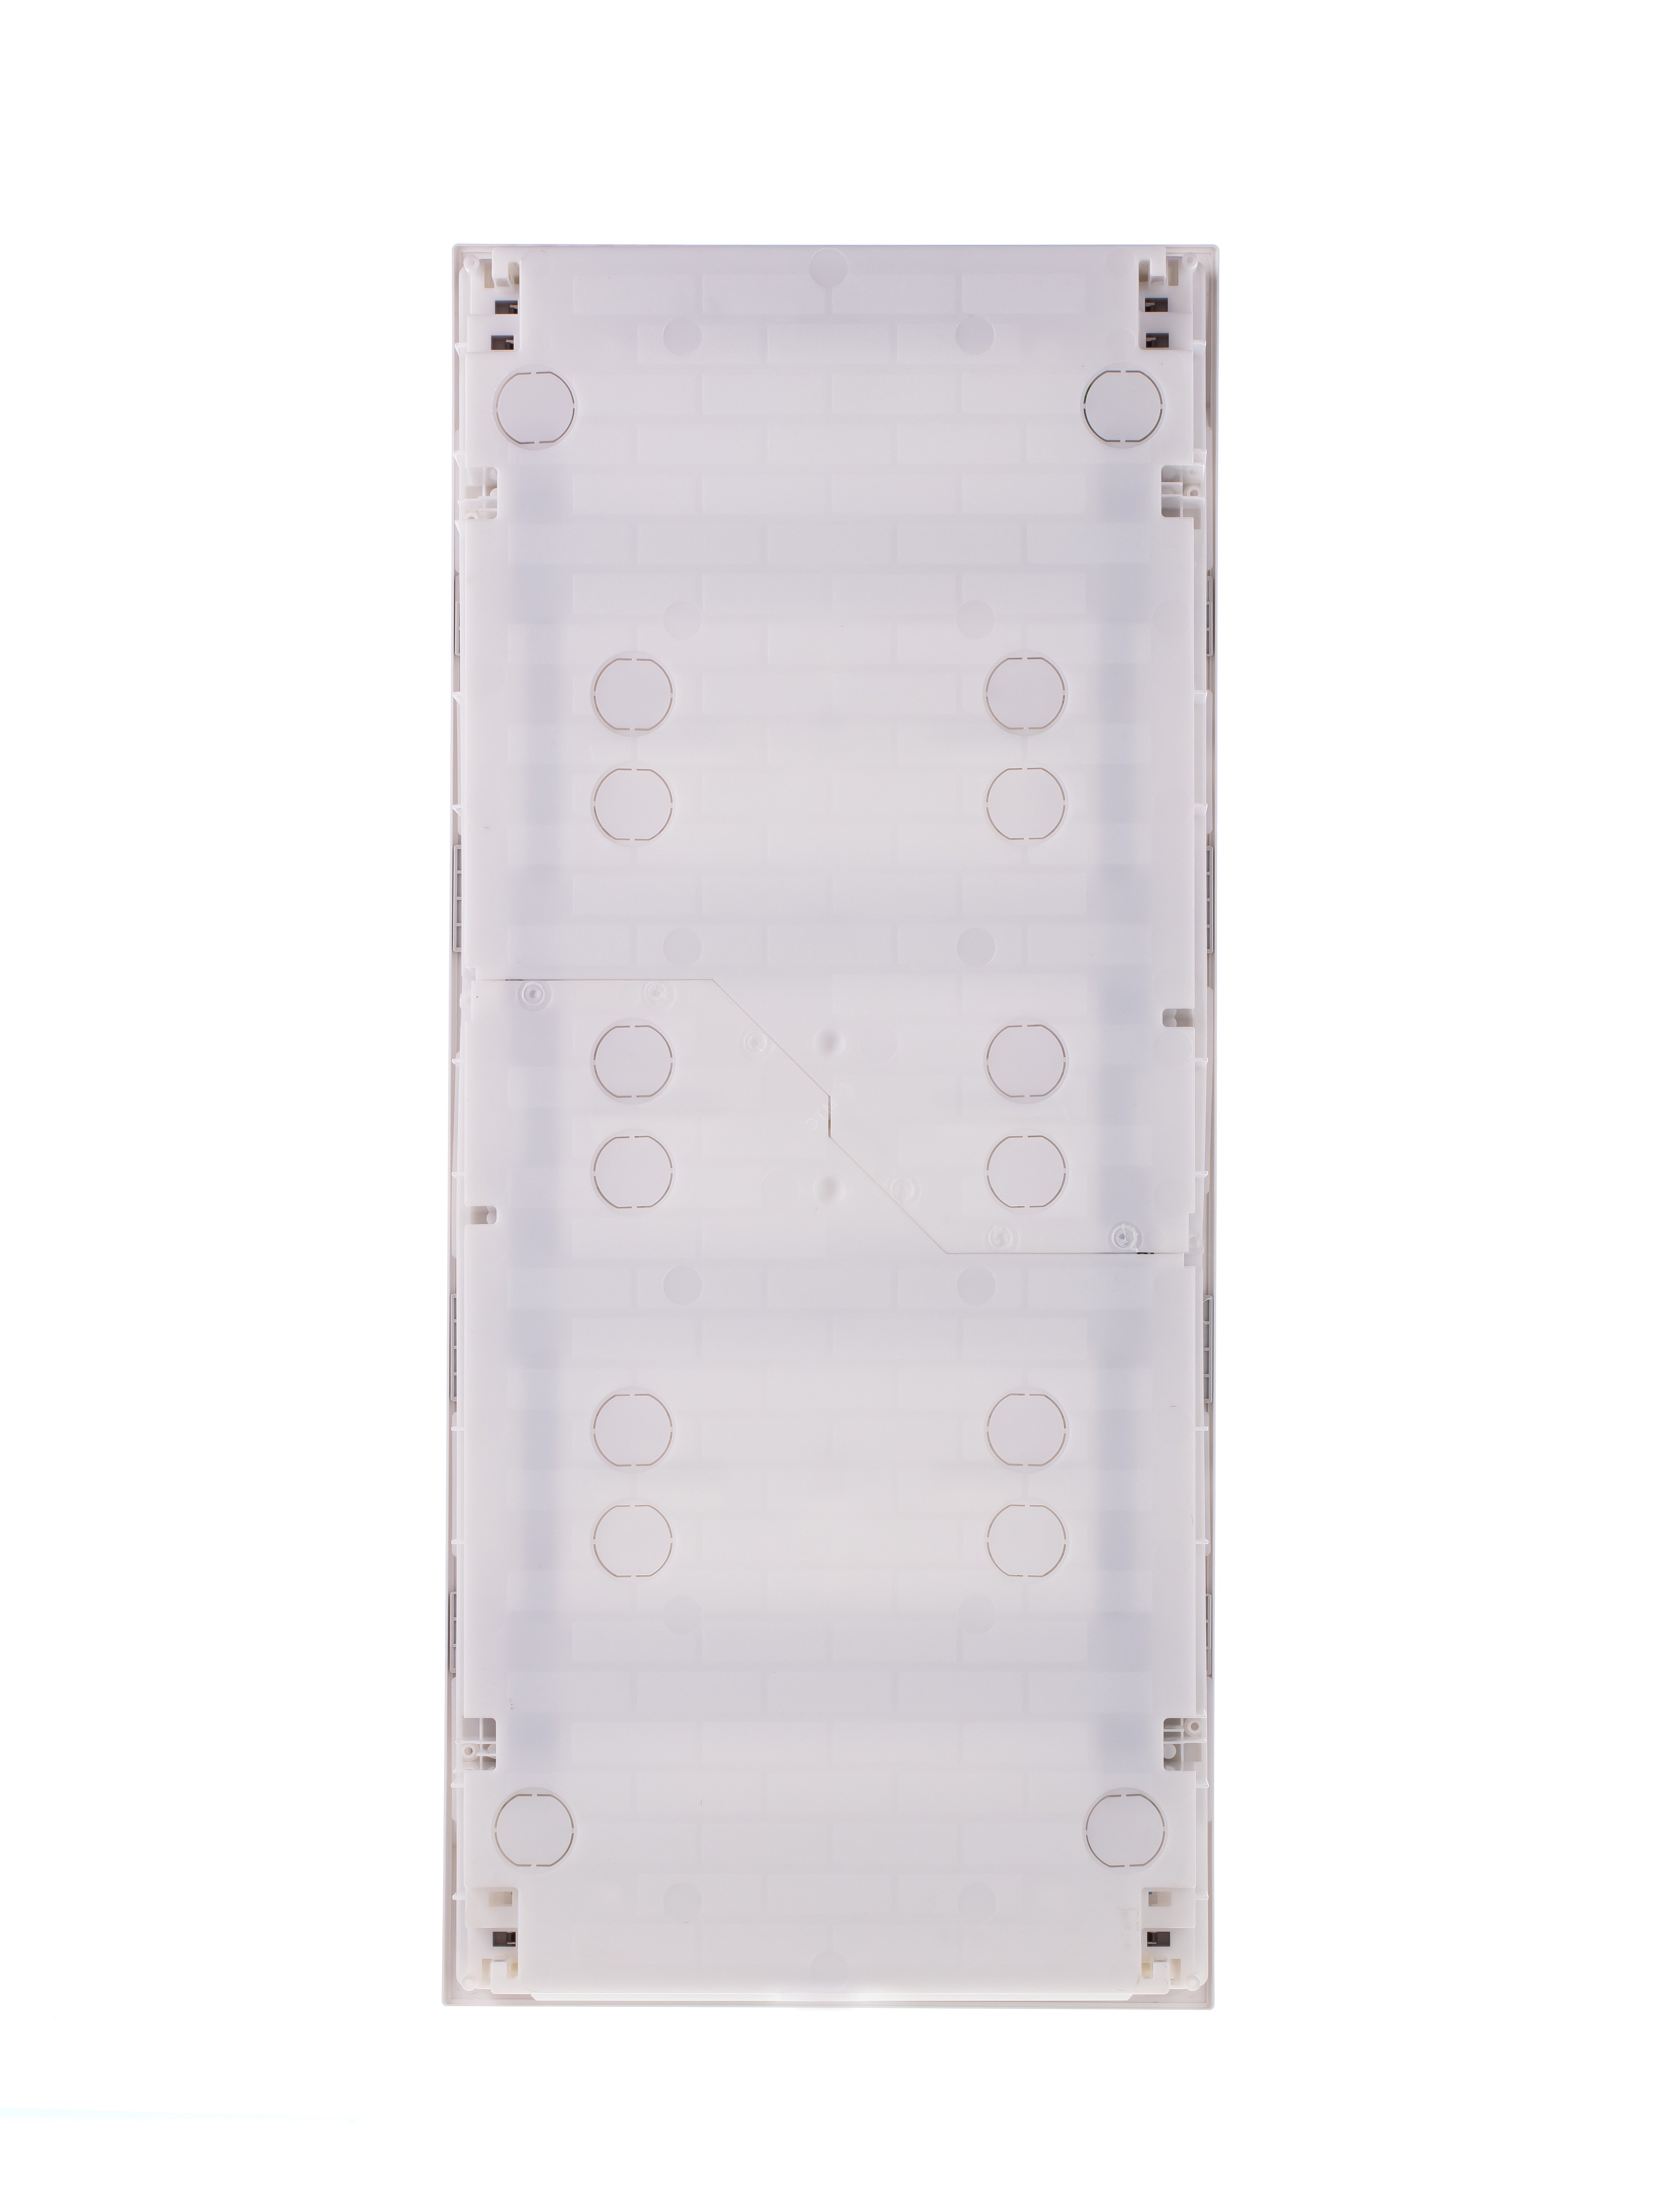 Щит распределительный встраиваемый ЩРв-п-48 пластиковый Mistral41 серая прозрачная дверь с клеммами IP41 (41A12X43B) 1SLM004101A2208 ABB - превью 5